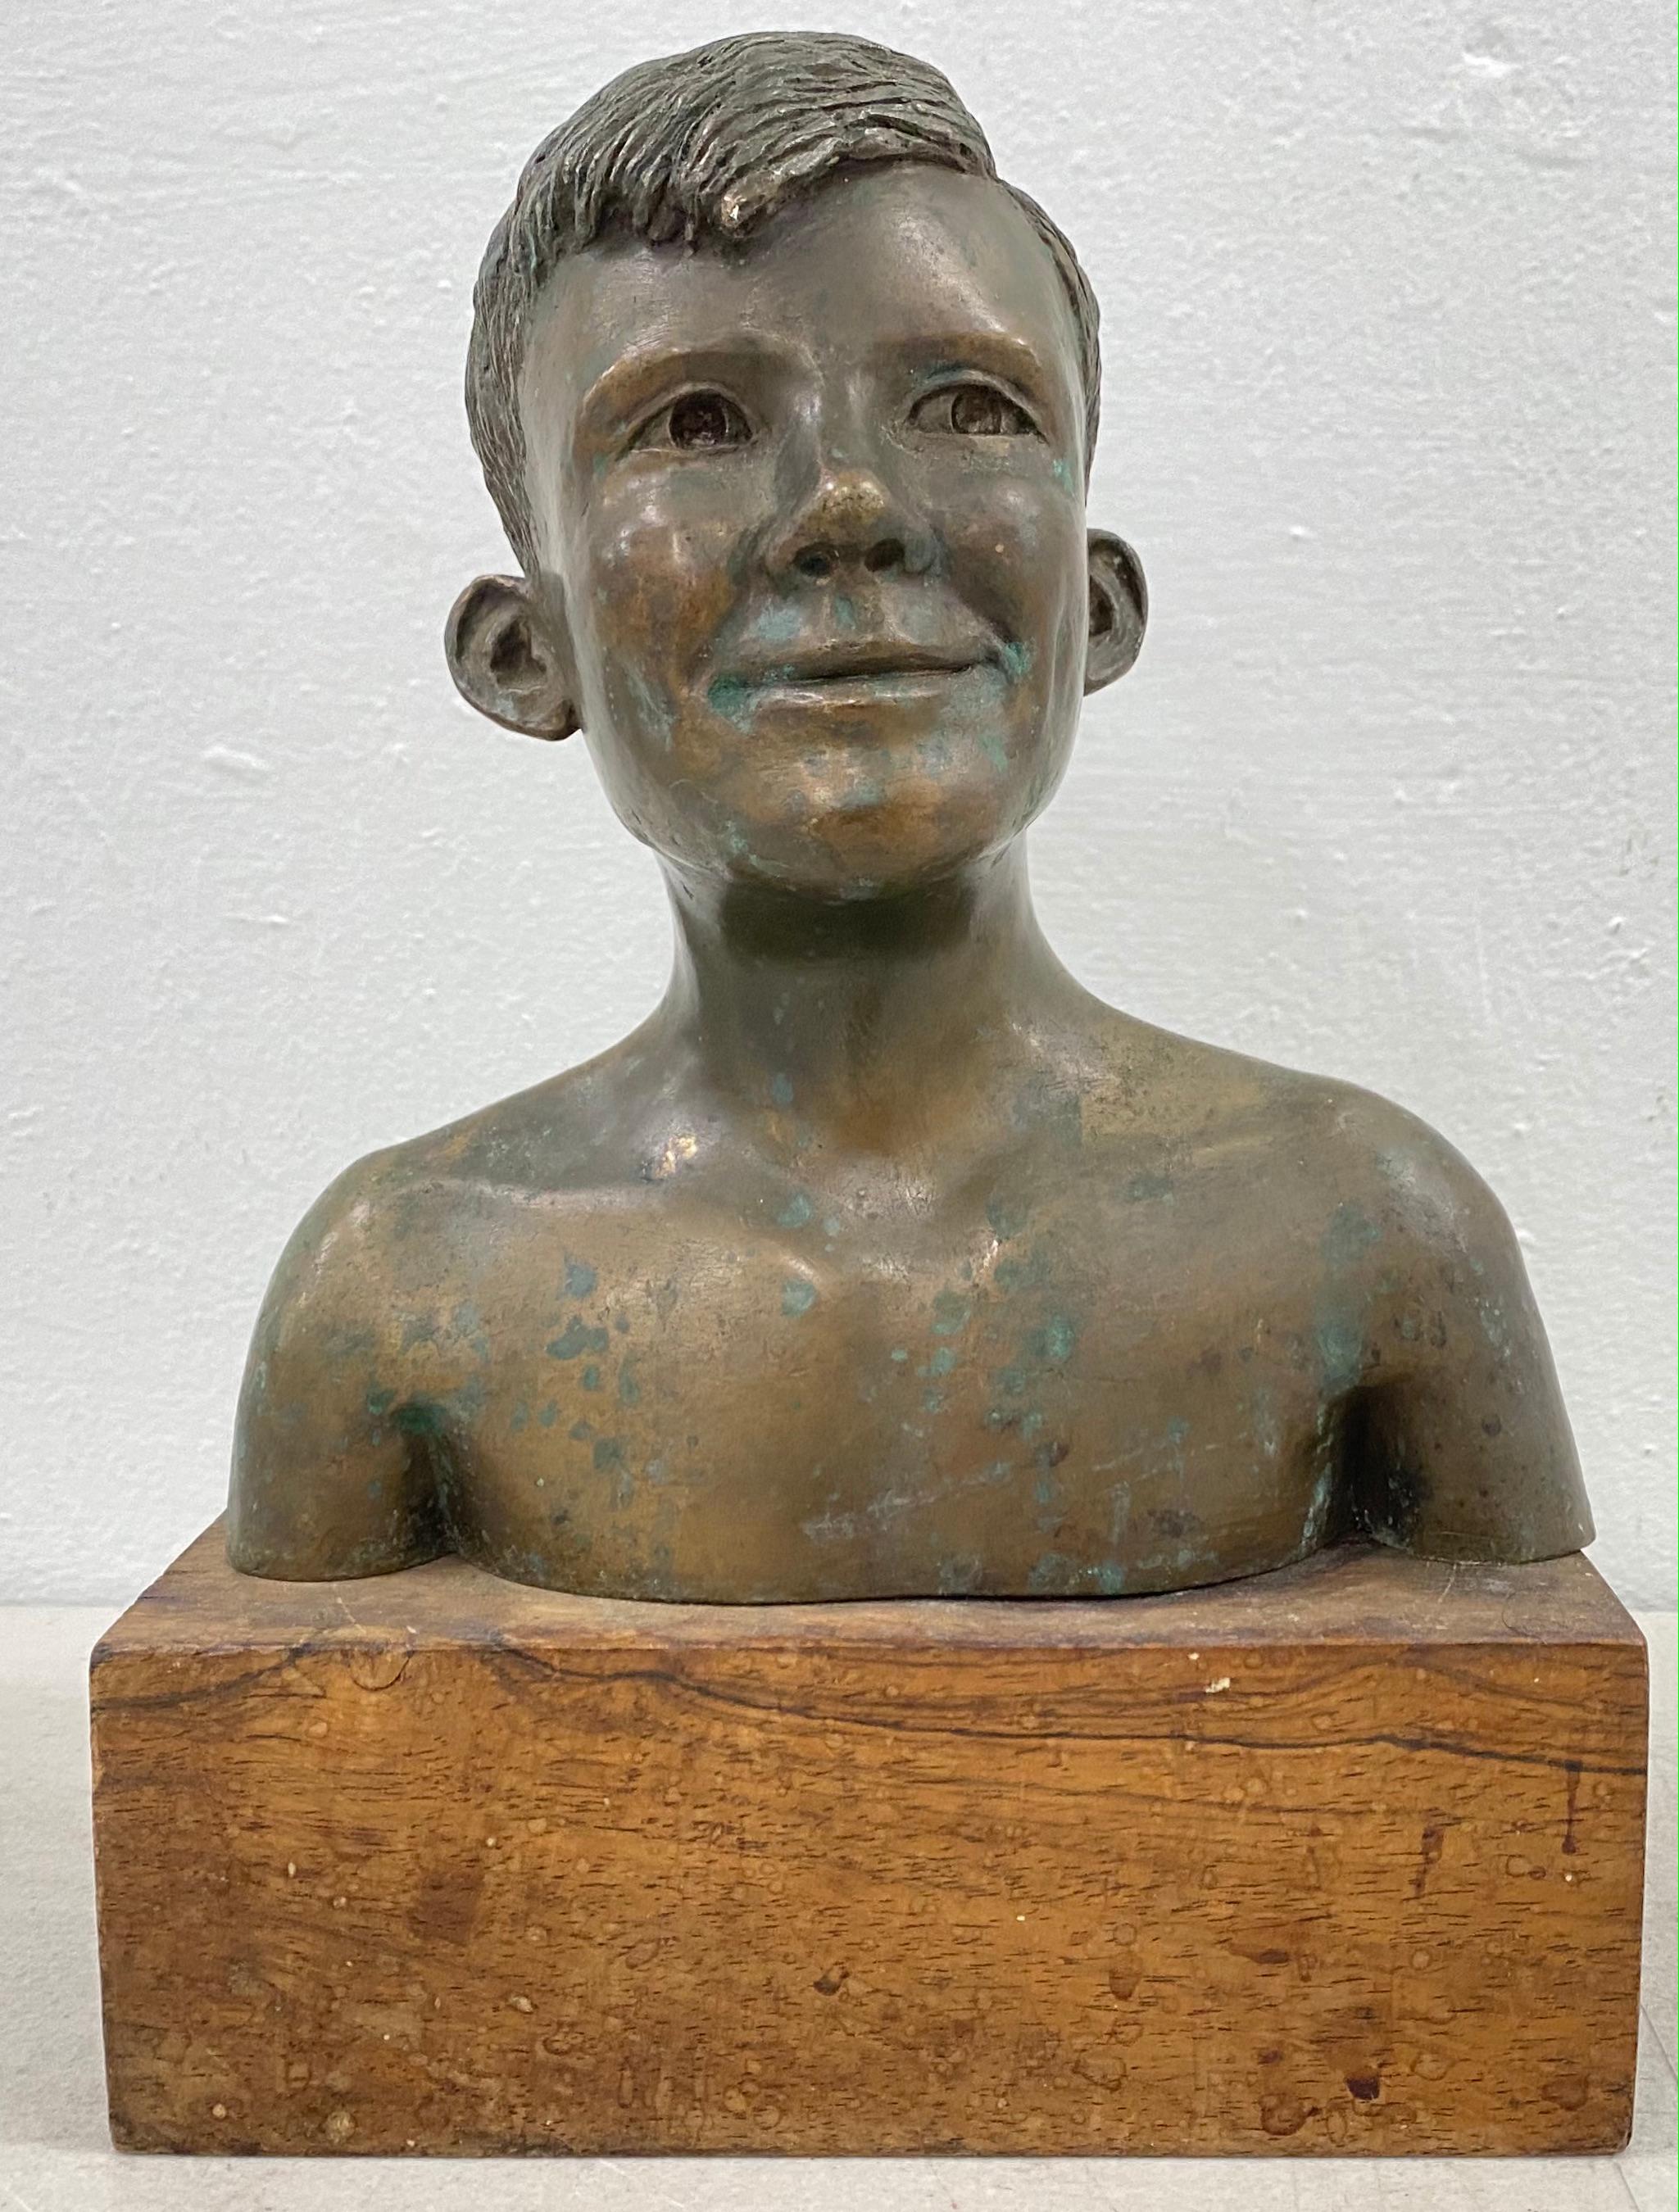 Rex Dietderich (Américain, 20ème siècle) "Frank, 14 ans" Sculpture originale en bronze C.1970

La base en noyer mesure 7" de largeur x 3,5" de profondeur x 2,5" de hauteur

Le buste en bronze mesure 7" de large x 4" de profondeur x 7.25' de